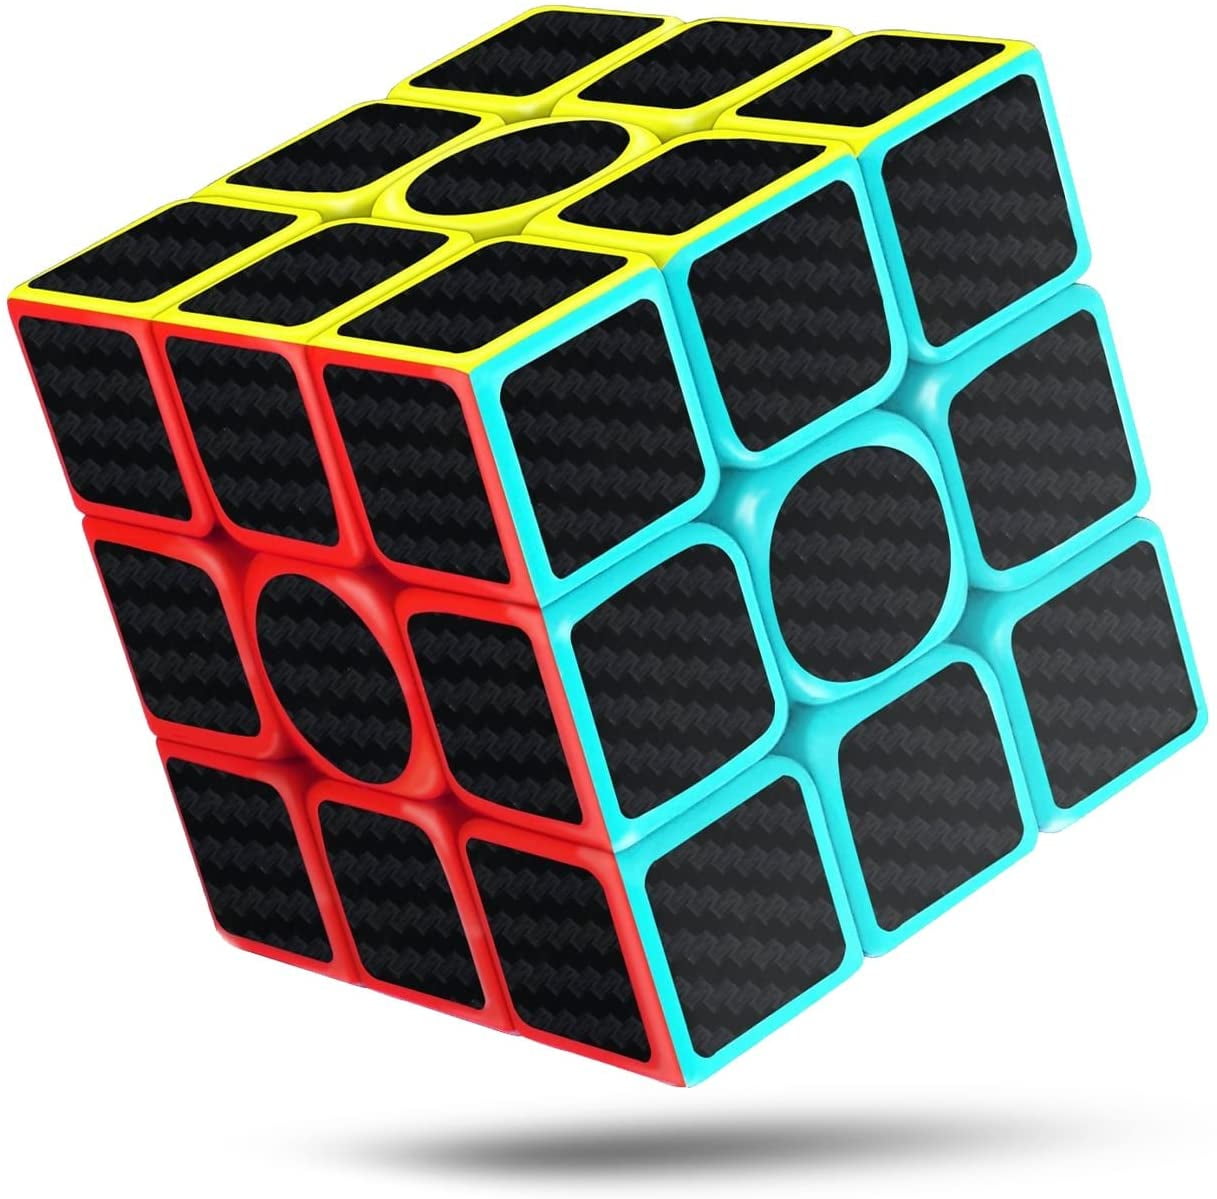 Magic Magic Cube Speed ​​Twist Puzzles Classic Brain Game Pyramorphix 